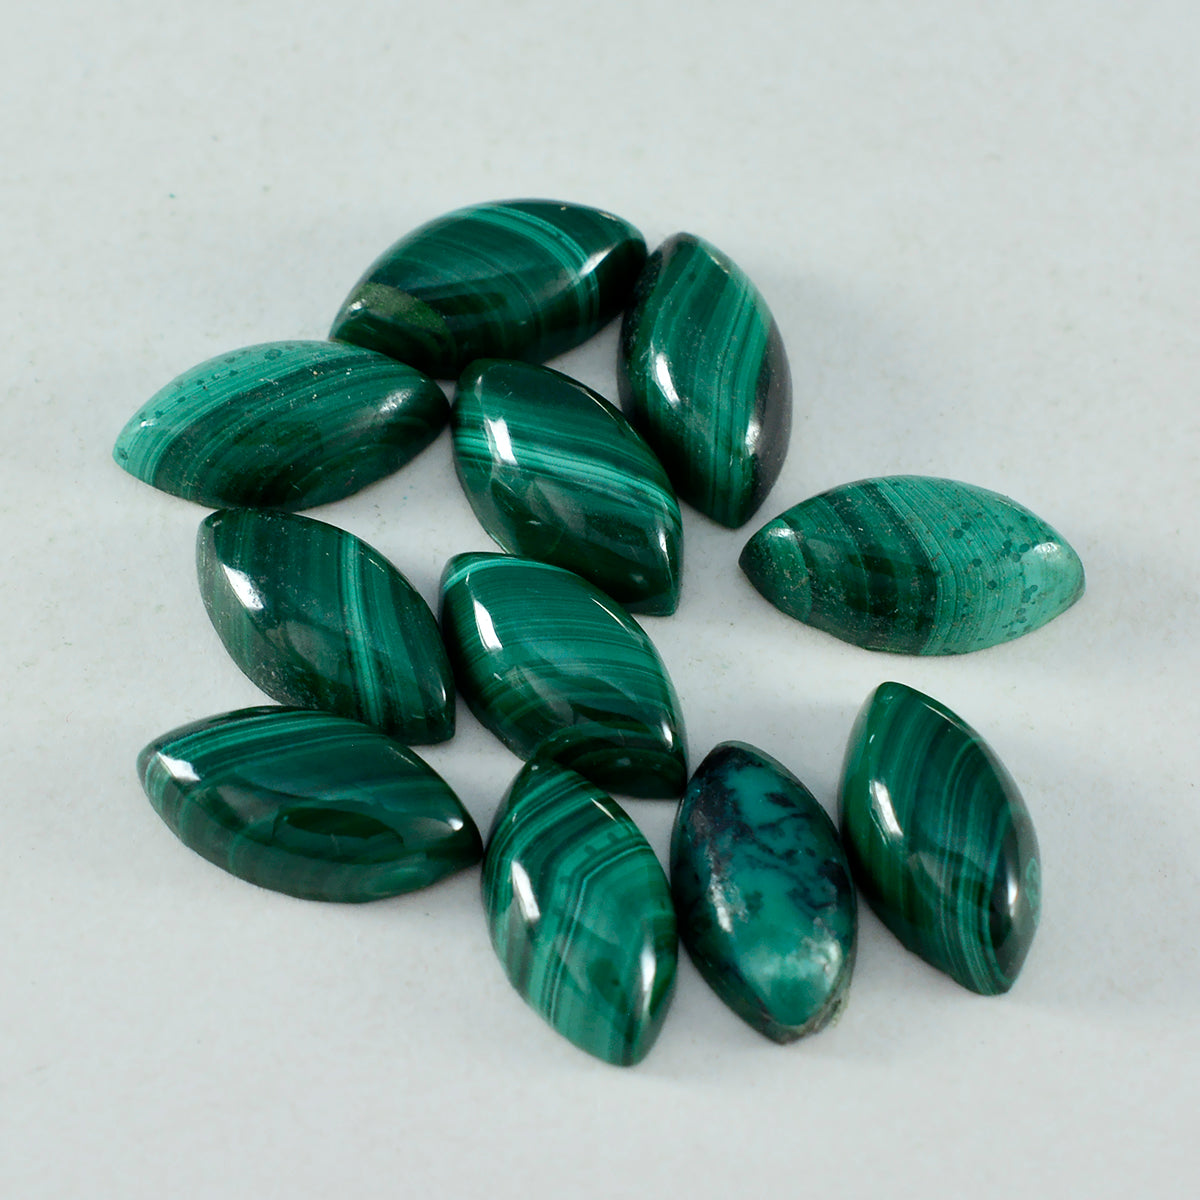 riyogems 1 шт. зеленый малахит кабошон 9x18 мм форма маркиза отличное качество свободный драгоценный камень